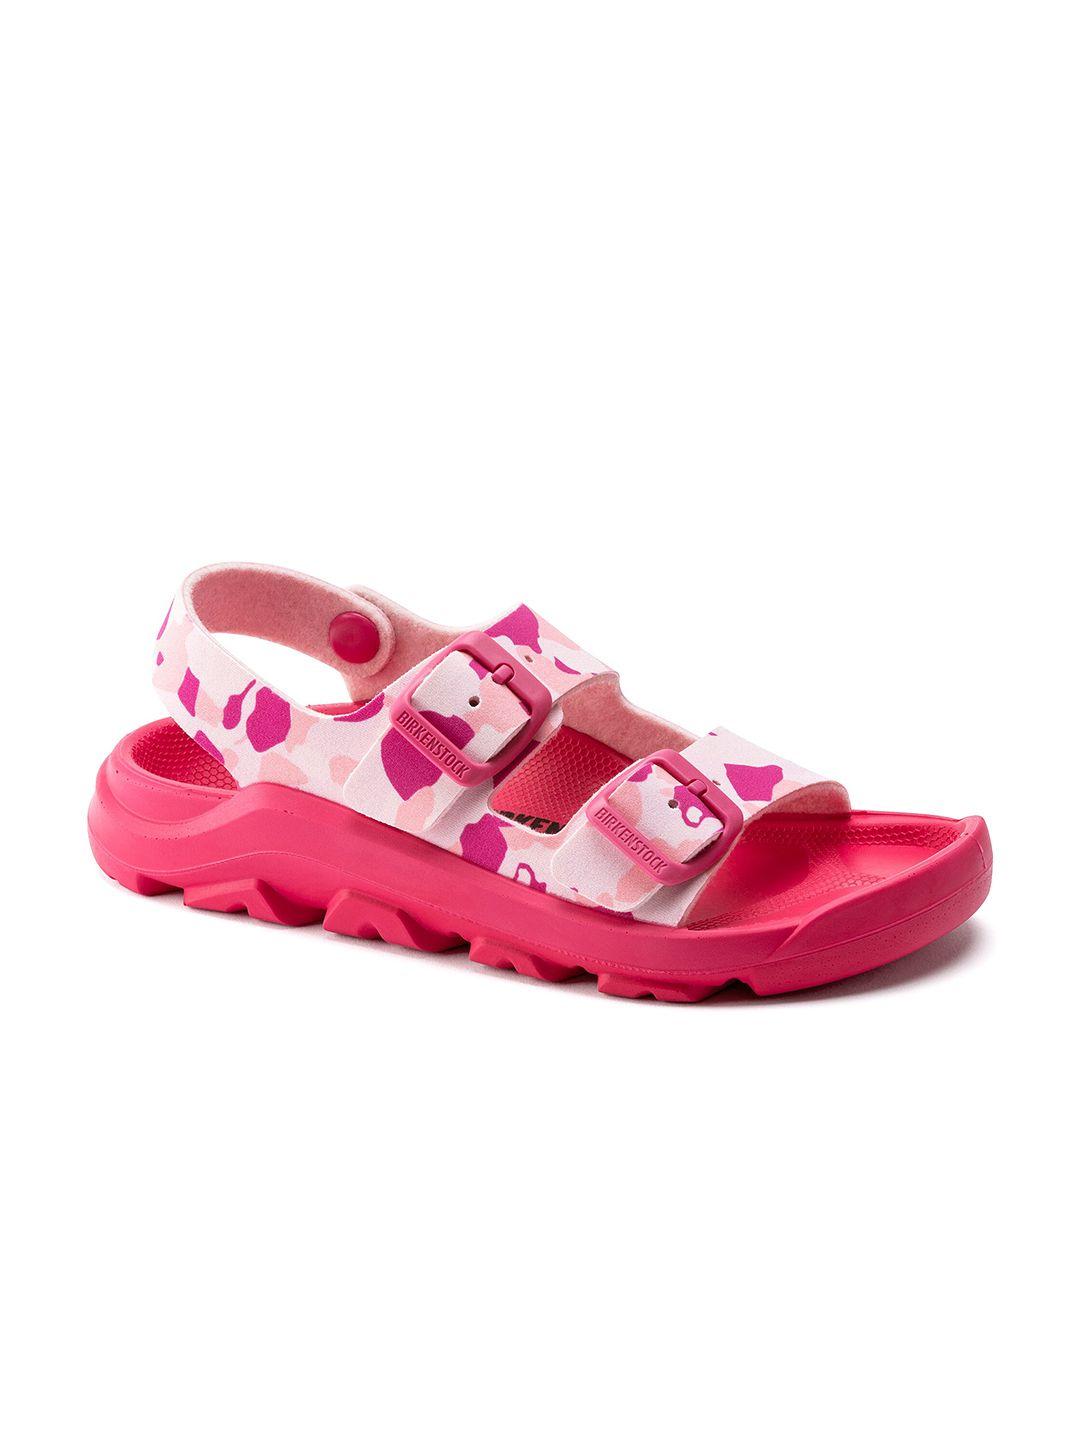 birkenstock-boys-narrow-width-pink-mogami-birko-flor-comfort-sandals